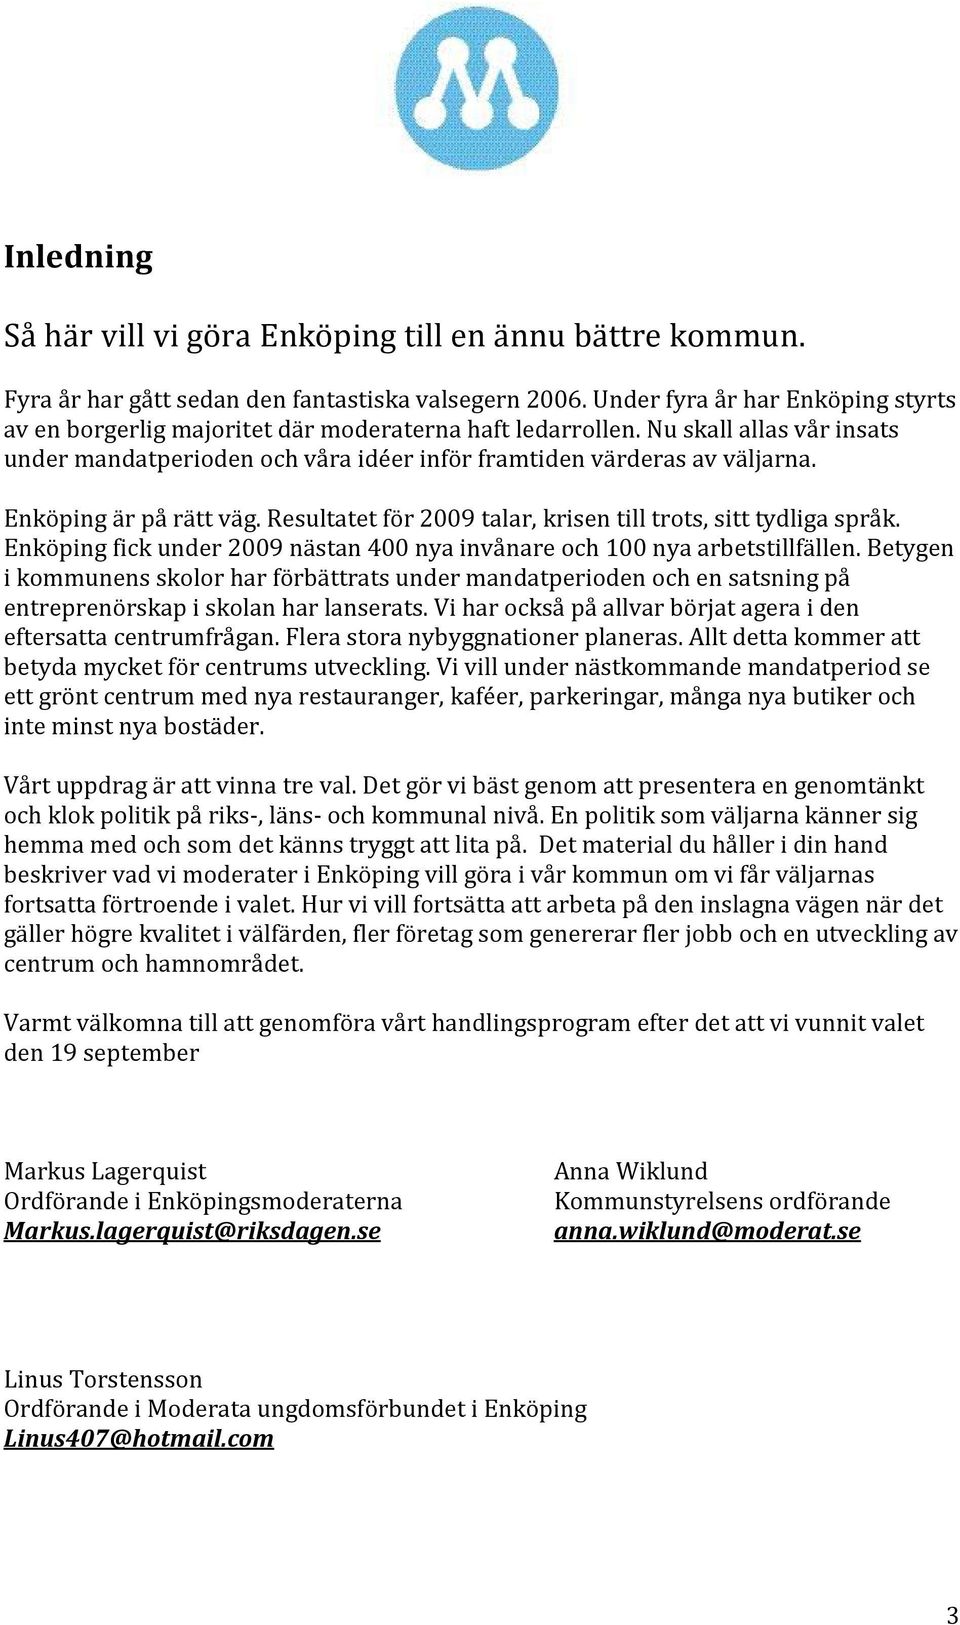 Enköping är på rätt väg. Resultatet för 2009 talar, krisen till trots, sitt tydliga språk. Enköping fick under 2009 nästan 400 nya invånare och 100 nya arbetstillfällen.